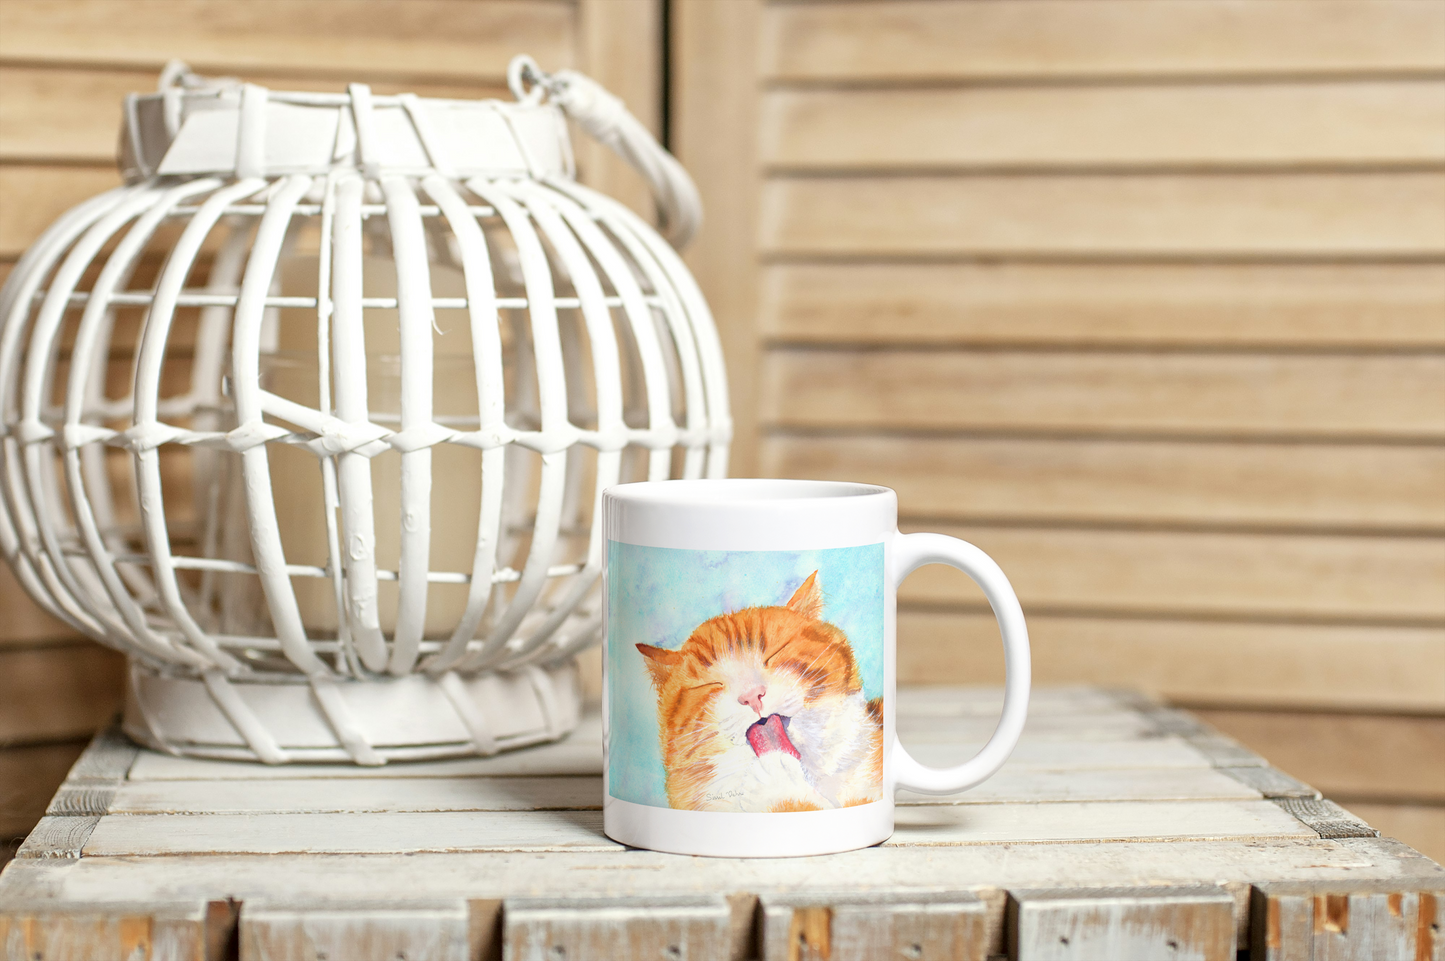 Mug Chat personnalisé | cadeau chat | chat roux| cadeau pour amoureux des chats